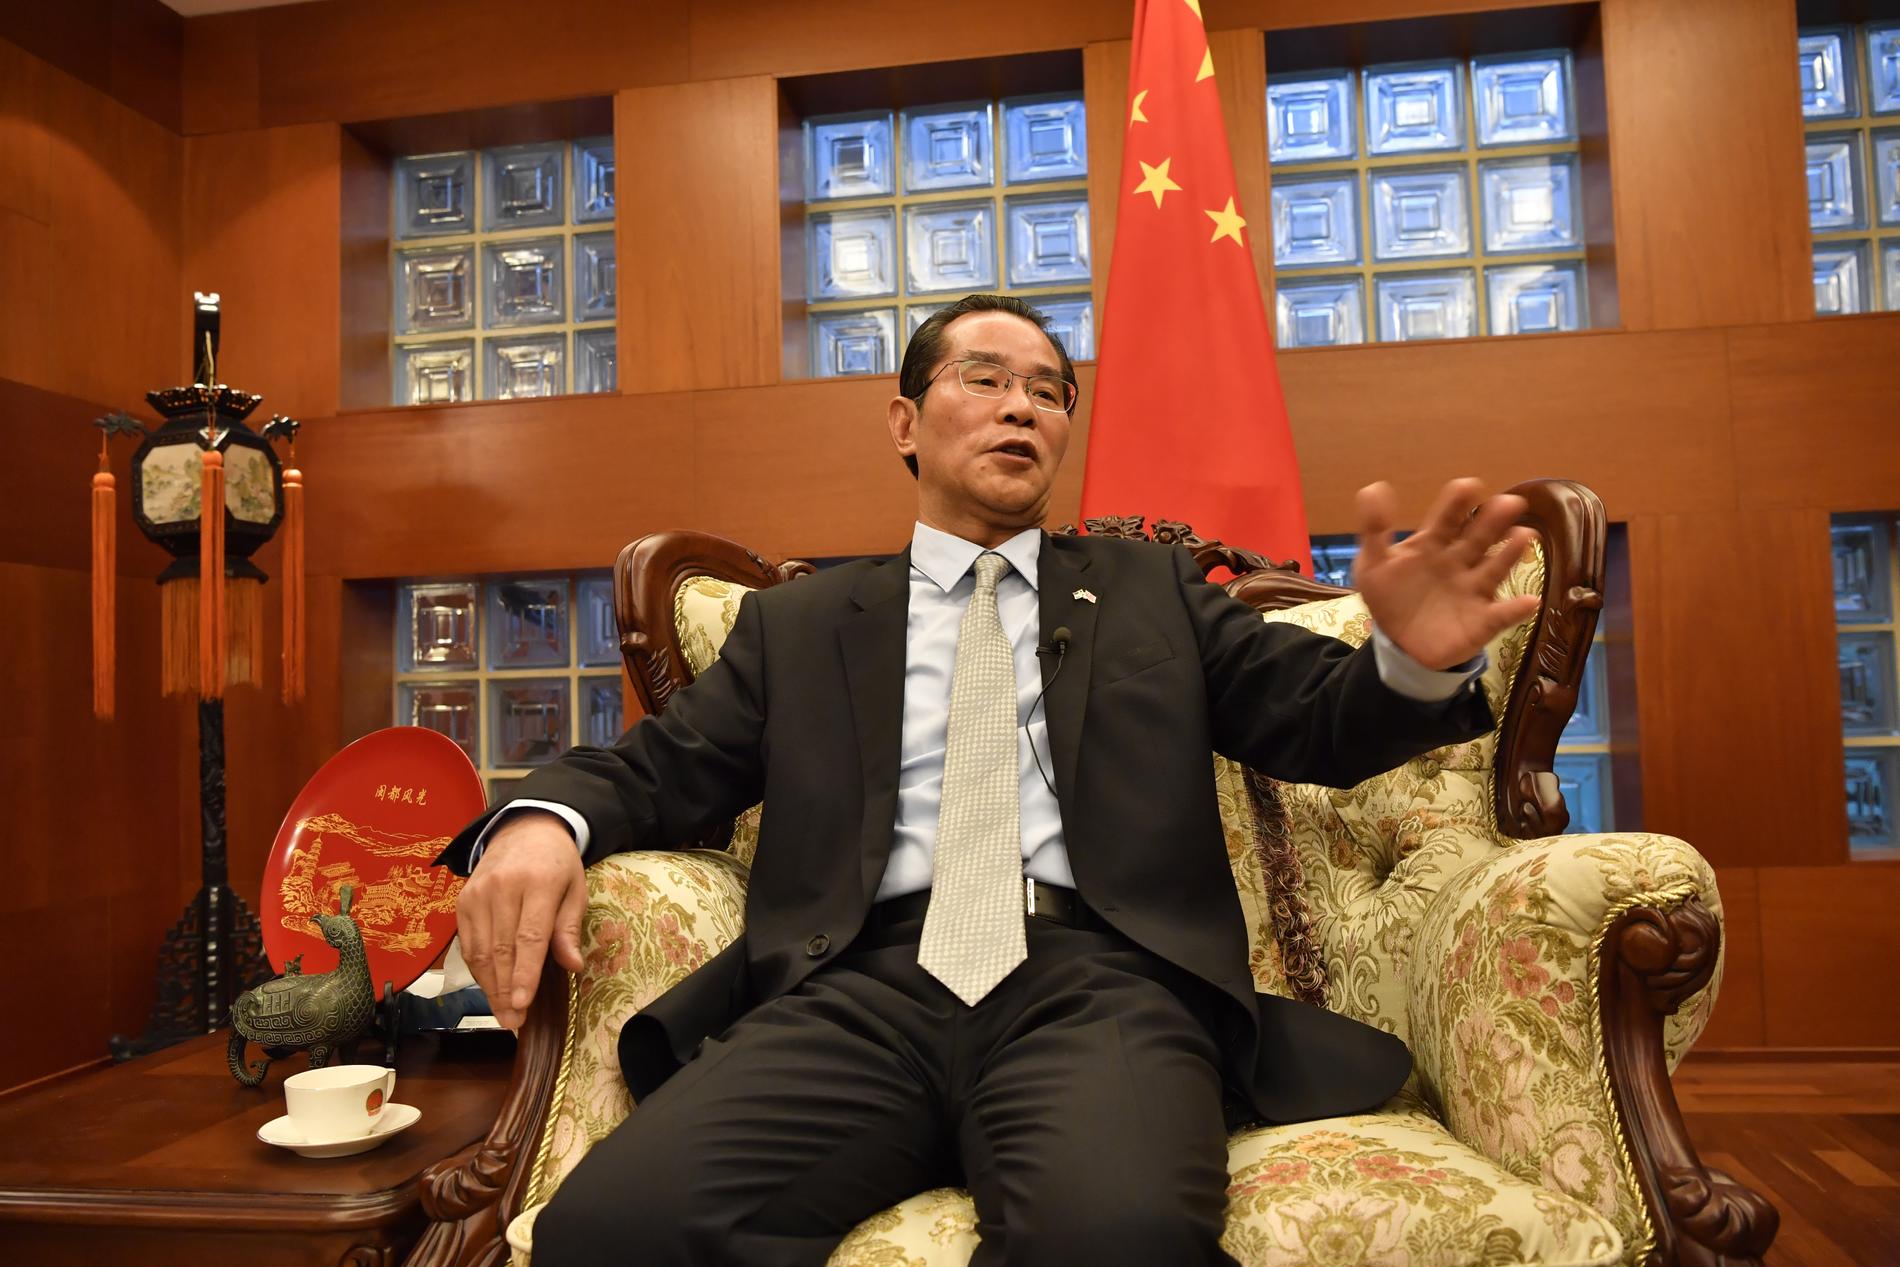 Kinas ambassadör i Sverige, Gui Congyou, hotar med konsekvenser för Sverige om ledande politiker deltar vid prisutdelningen av Svenska PEN:s Tucholskypris till den fängslade förläggaren Gui Minhai.